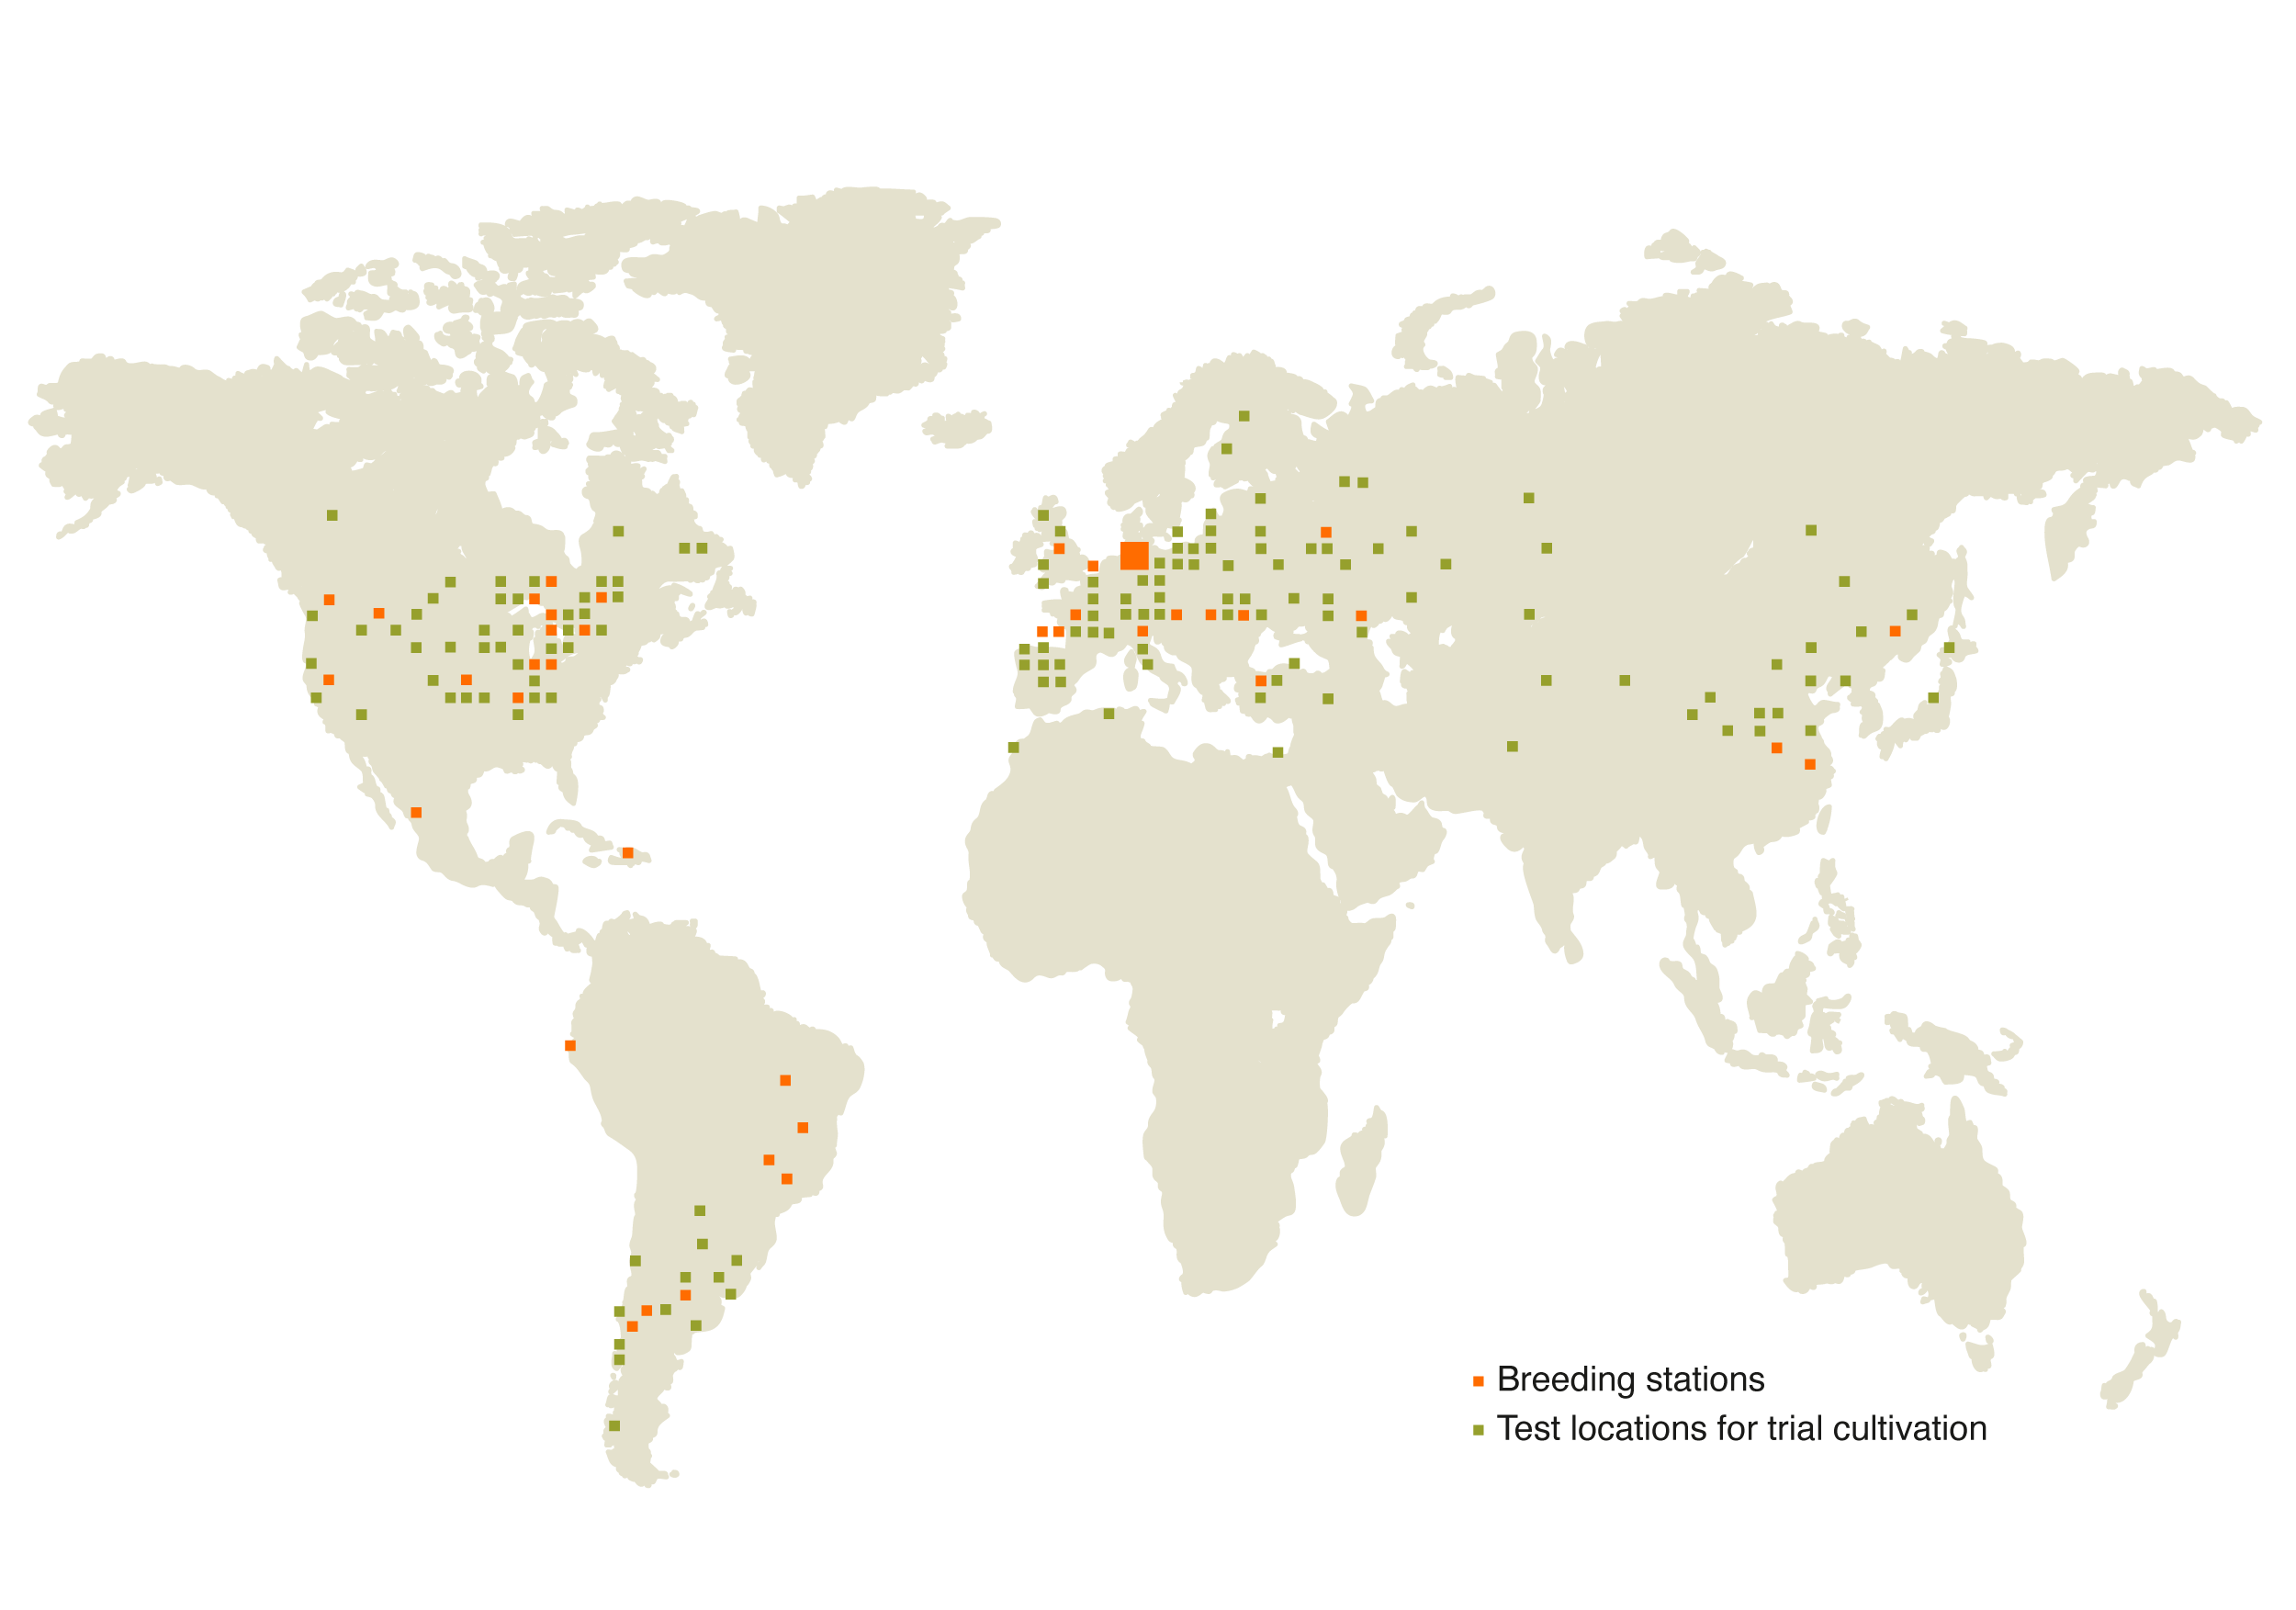 Wereldkaart met hierop de veredelingscentra en proeflocaties van KWS gemarkeerd